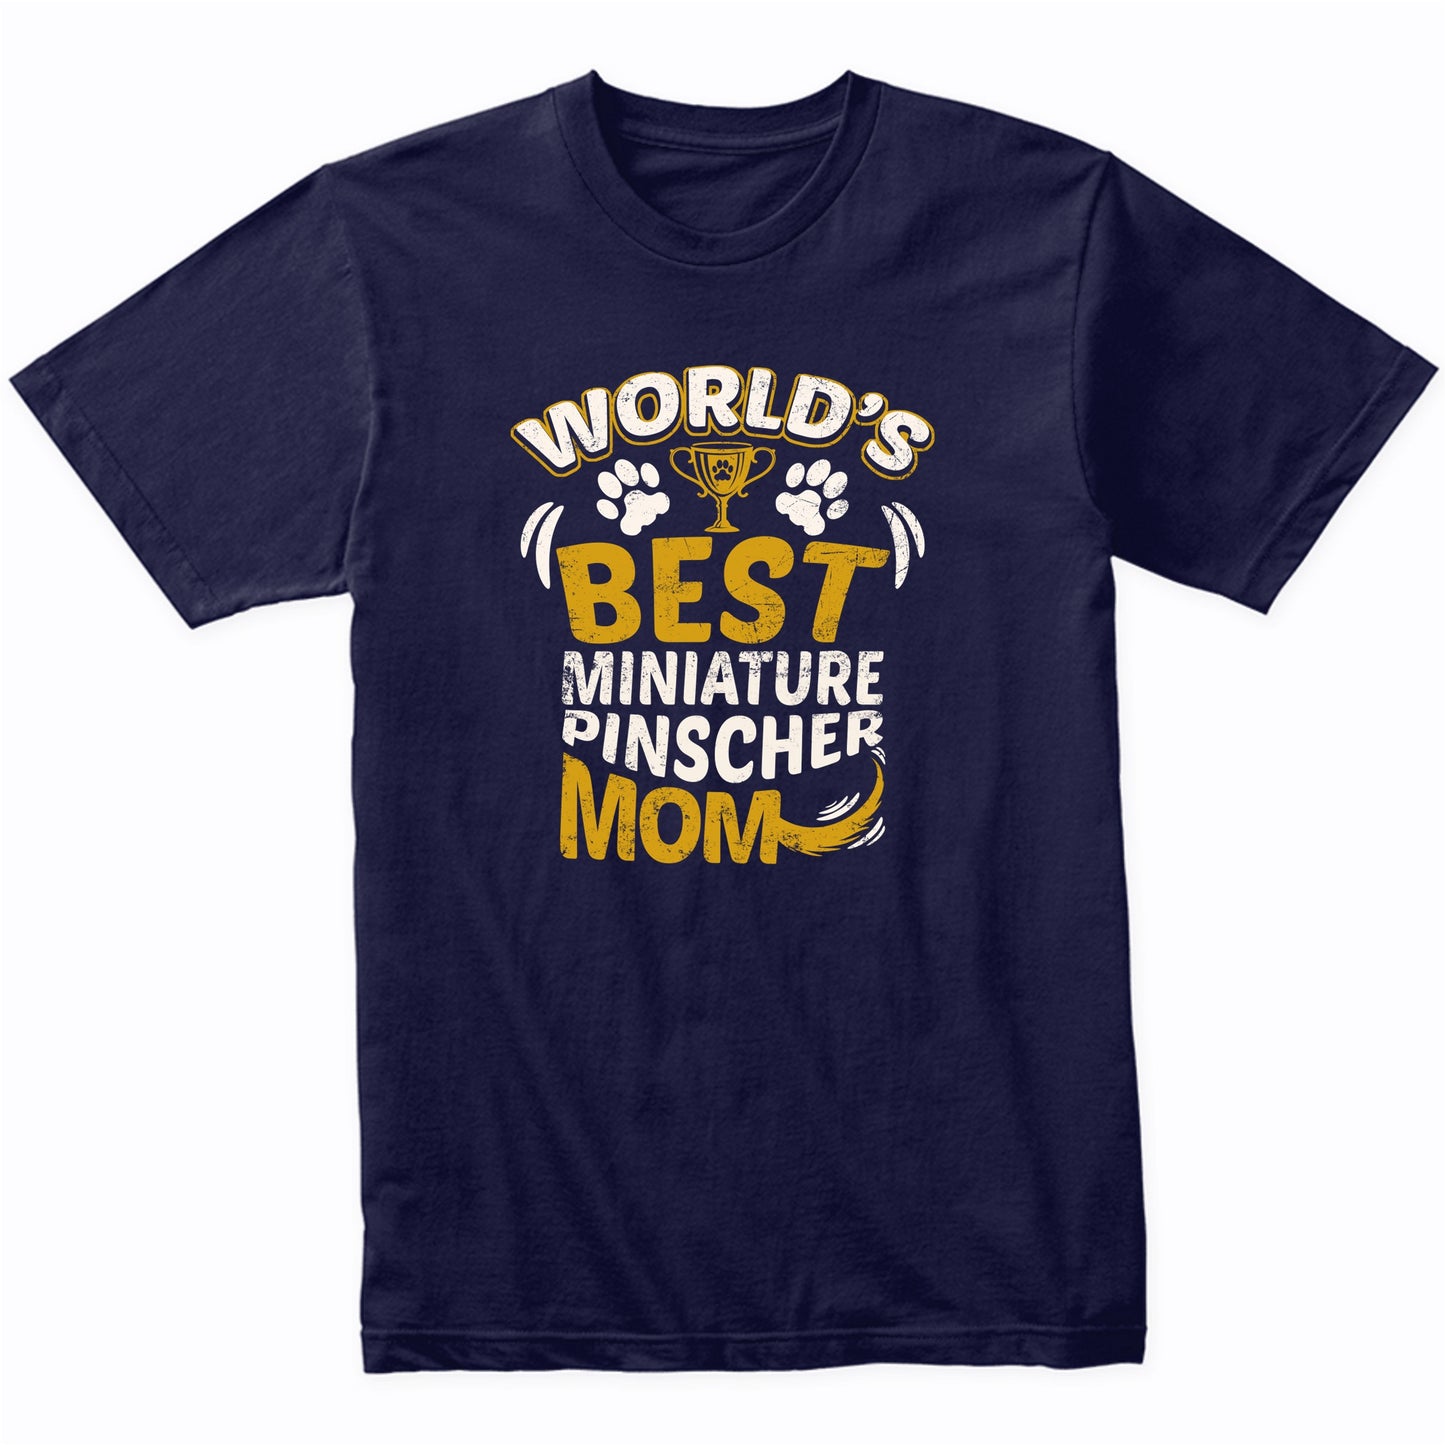 World's Best Miniature Pinscher Mom Graphic T-Shirt